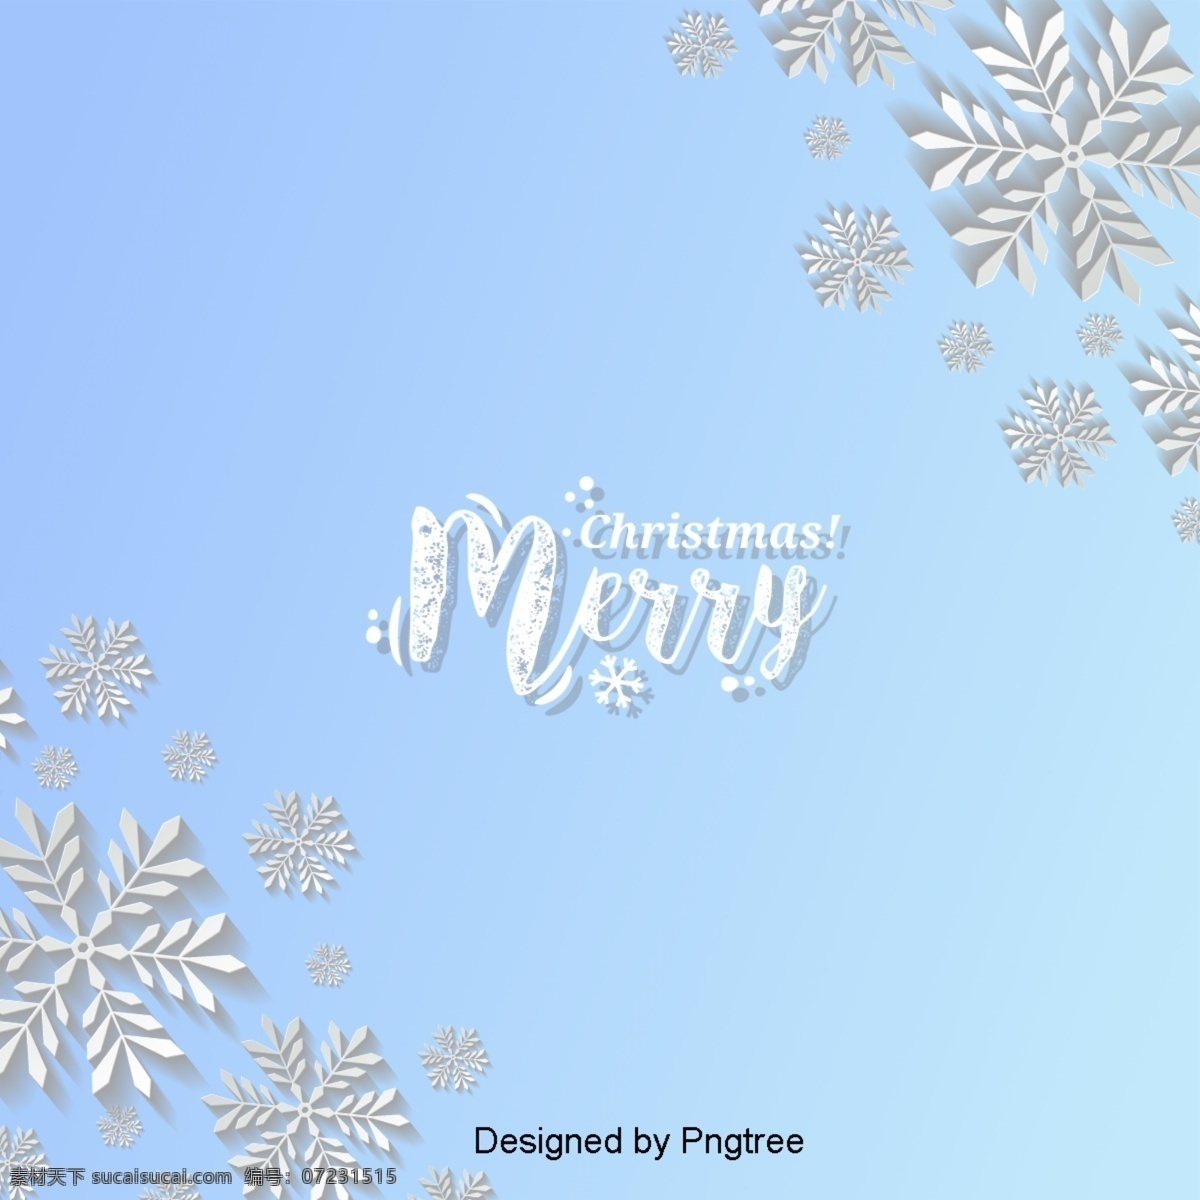 一个 简单 三维 雪花 圣诞 背景 立体 圣诞节 晴朗 冬天 雪 机 框架